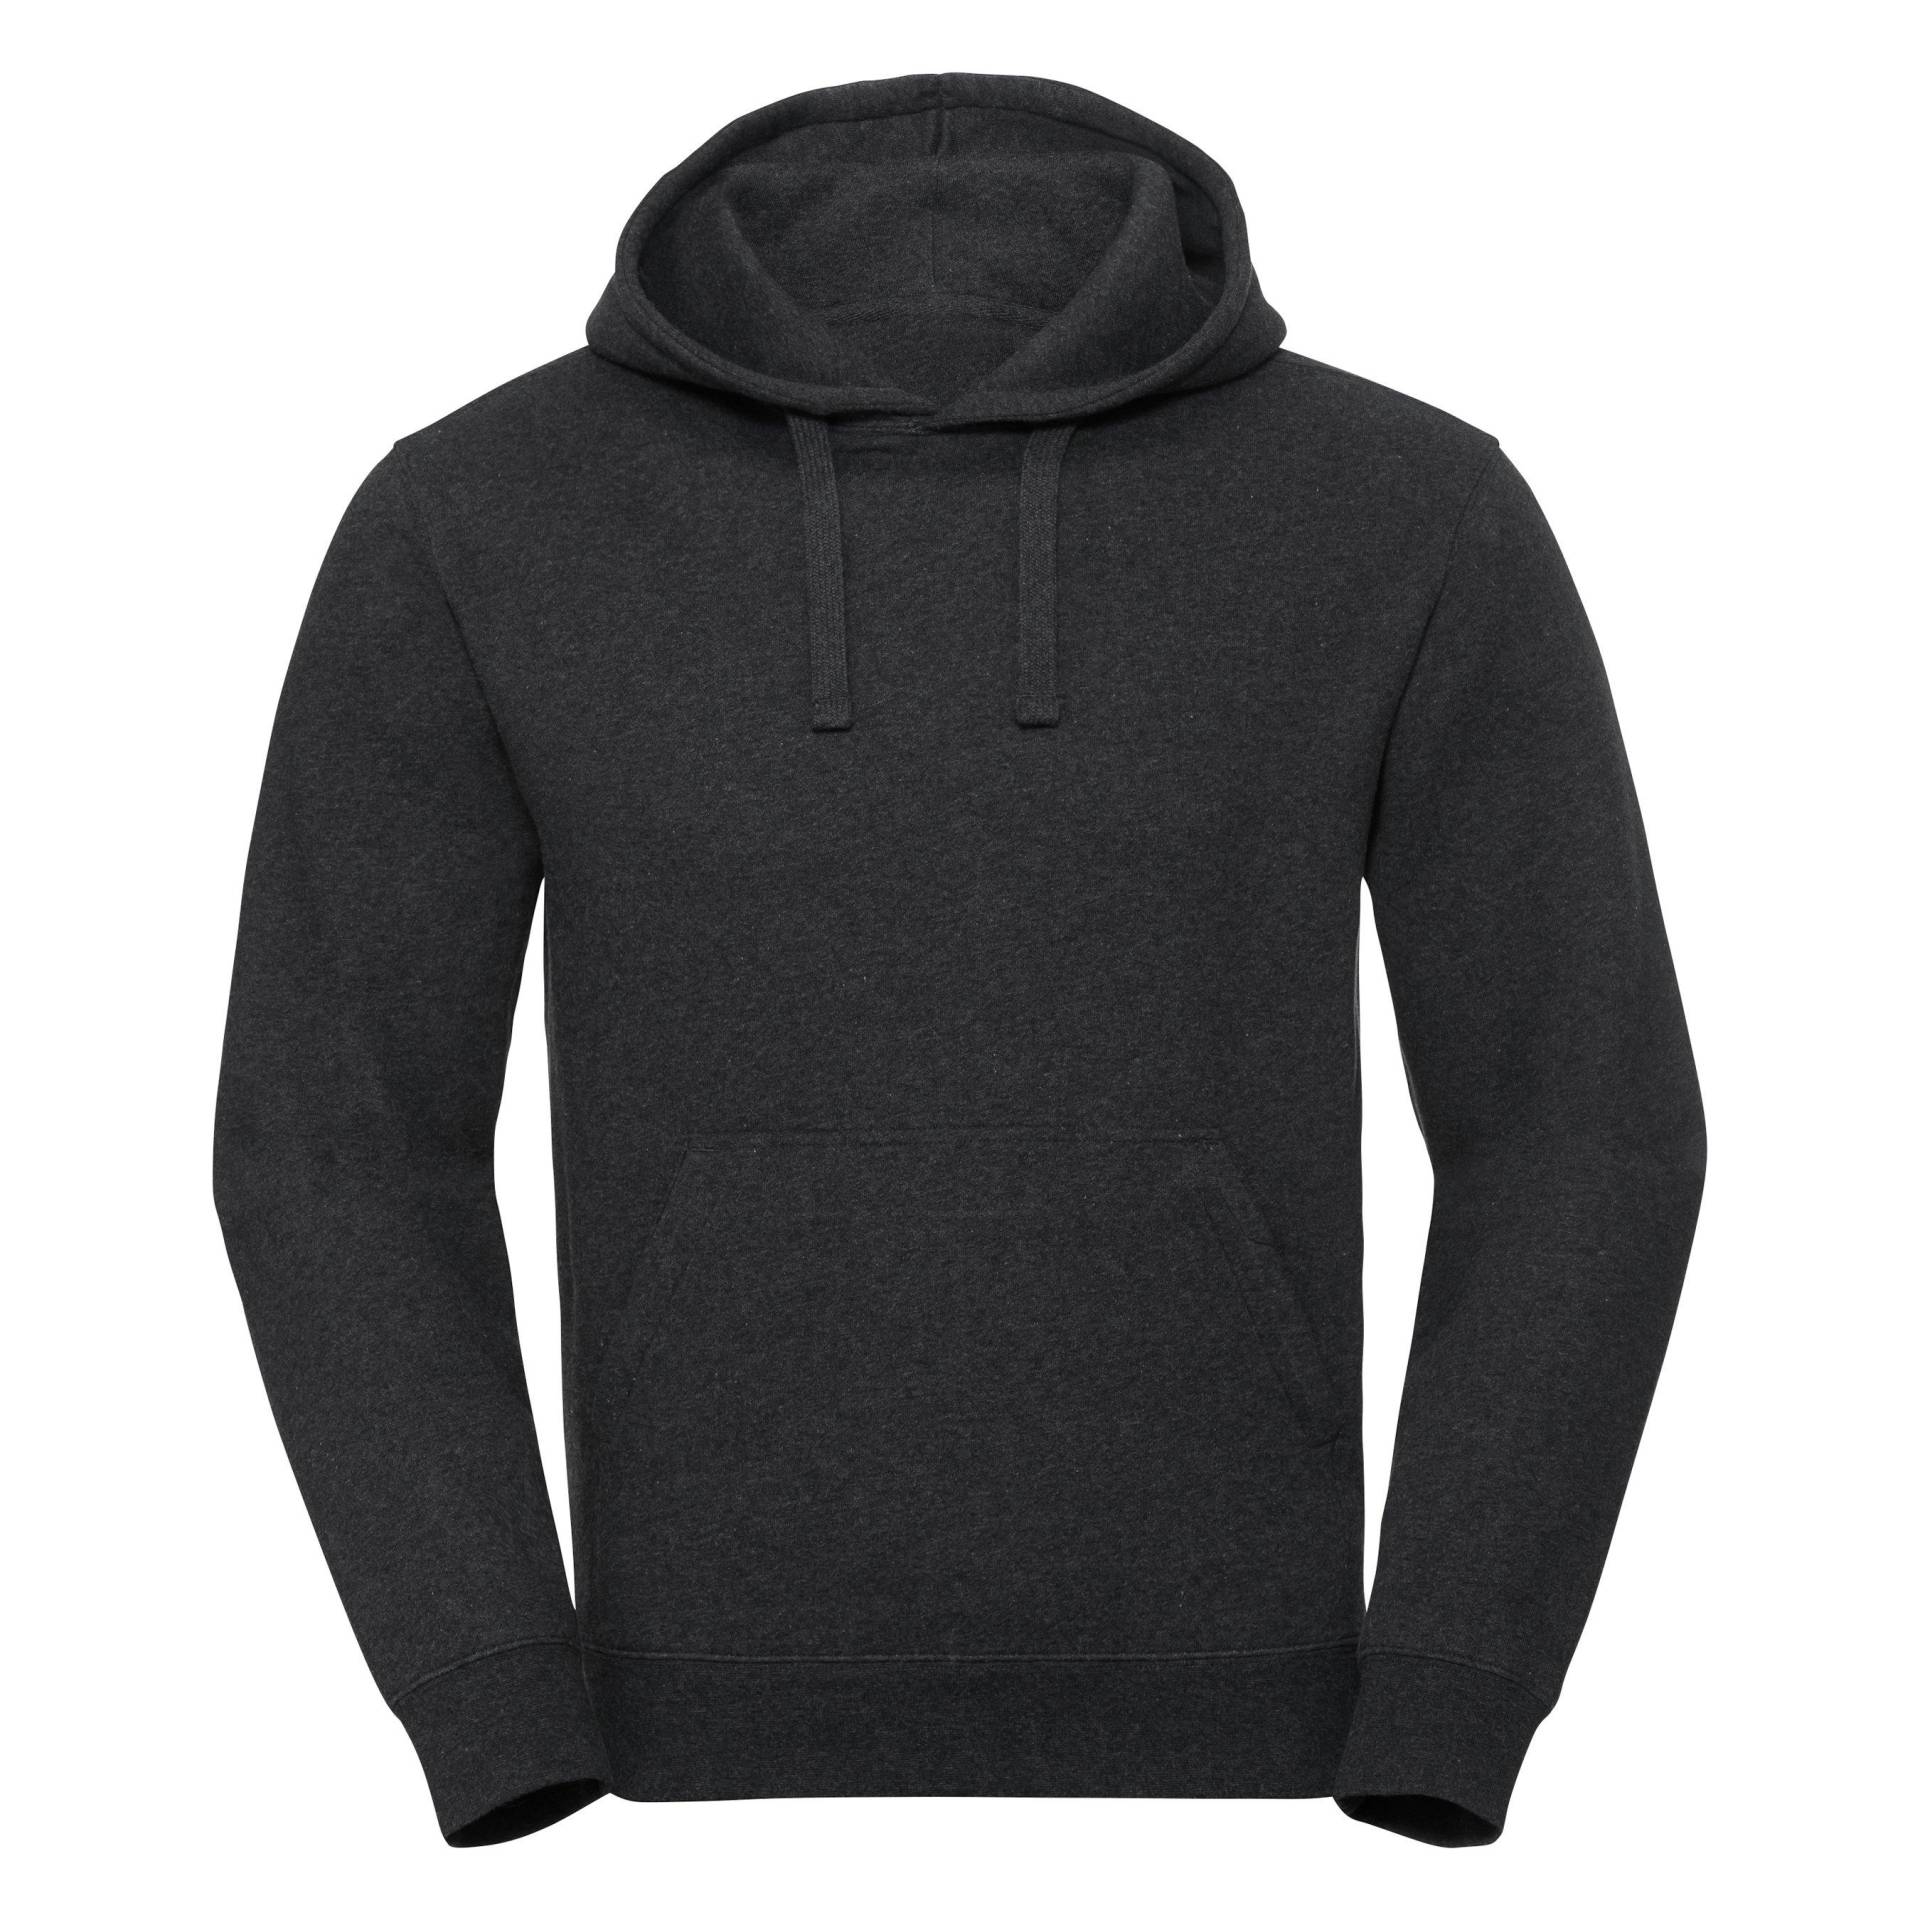 Authentic Sweatshirt Mit Kapuze Damen Charcoal Black S von Russell